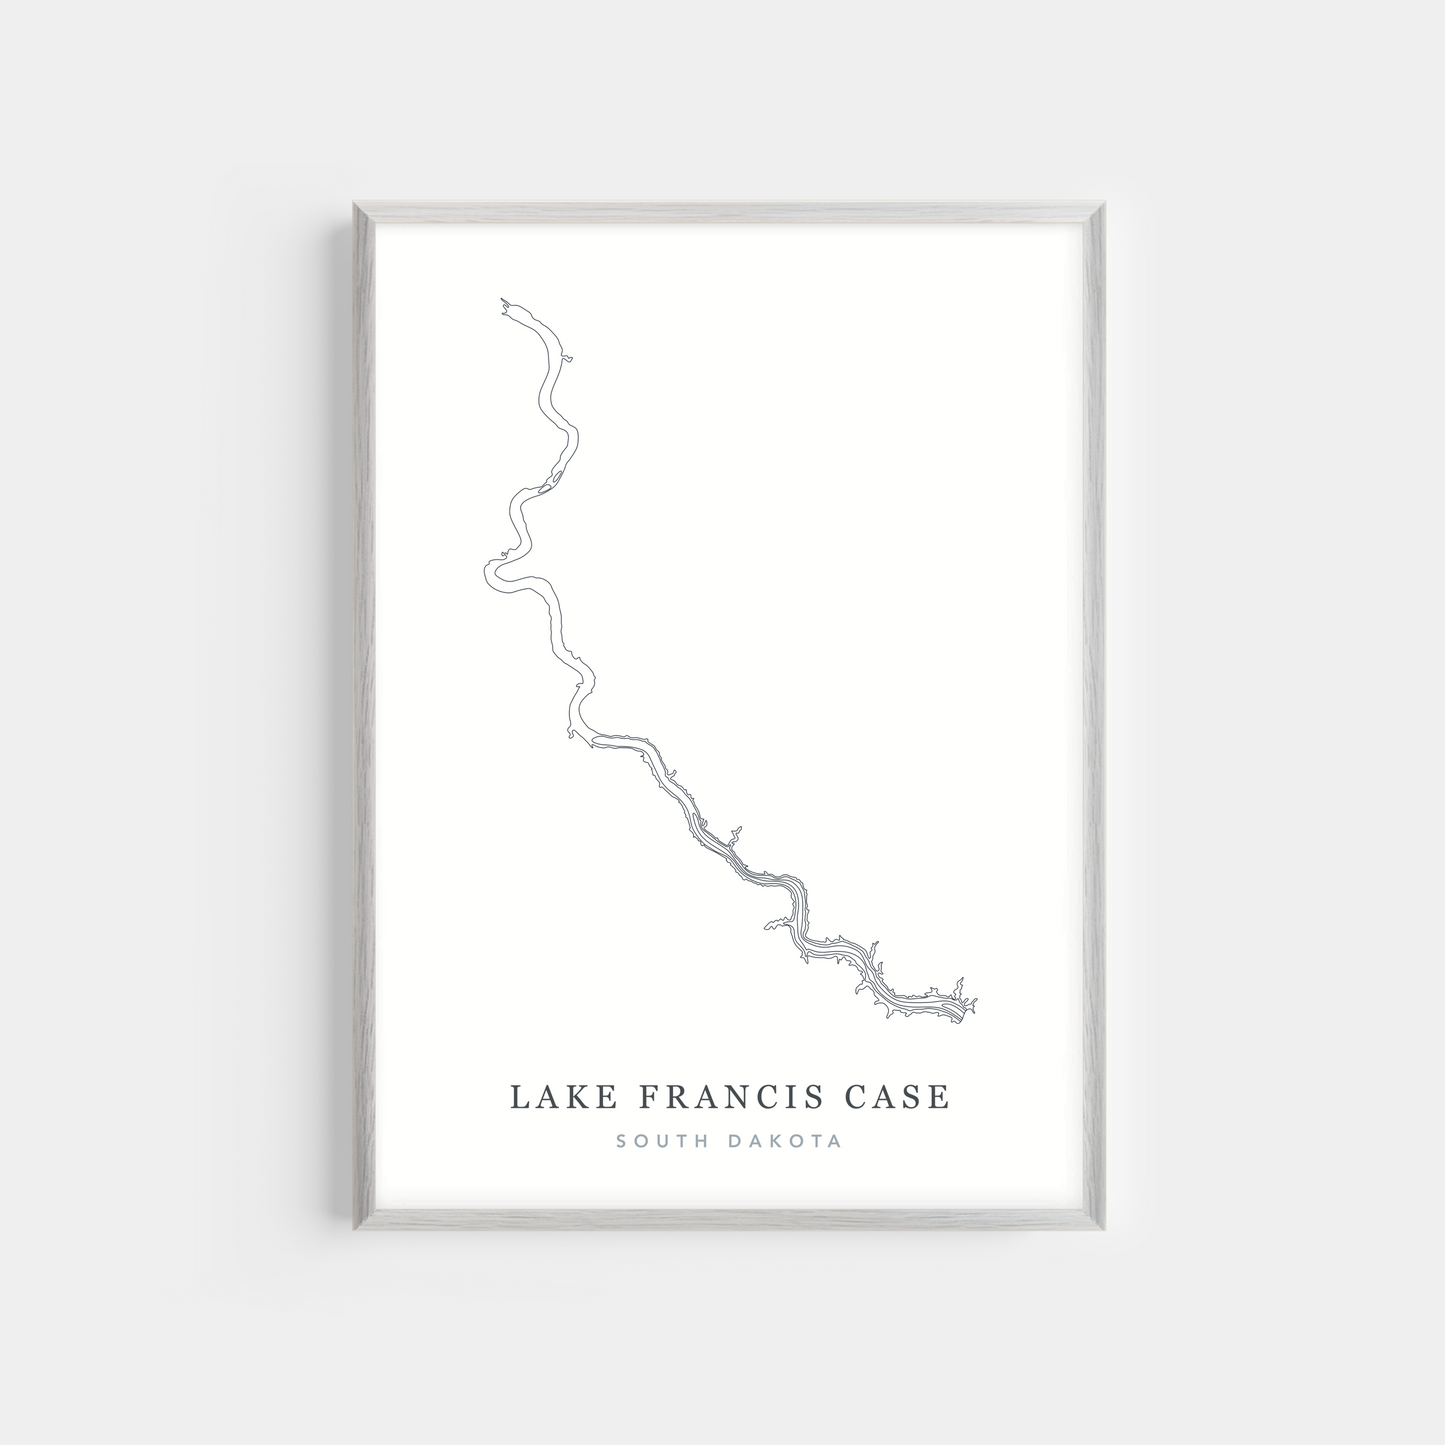 Lake Francis Case, South Dakota | Photo Print